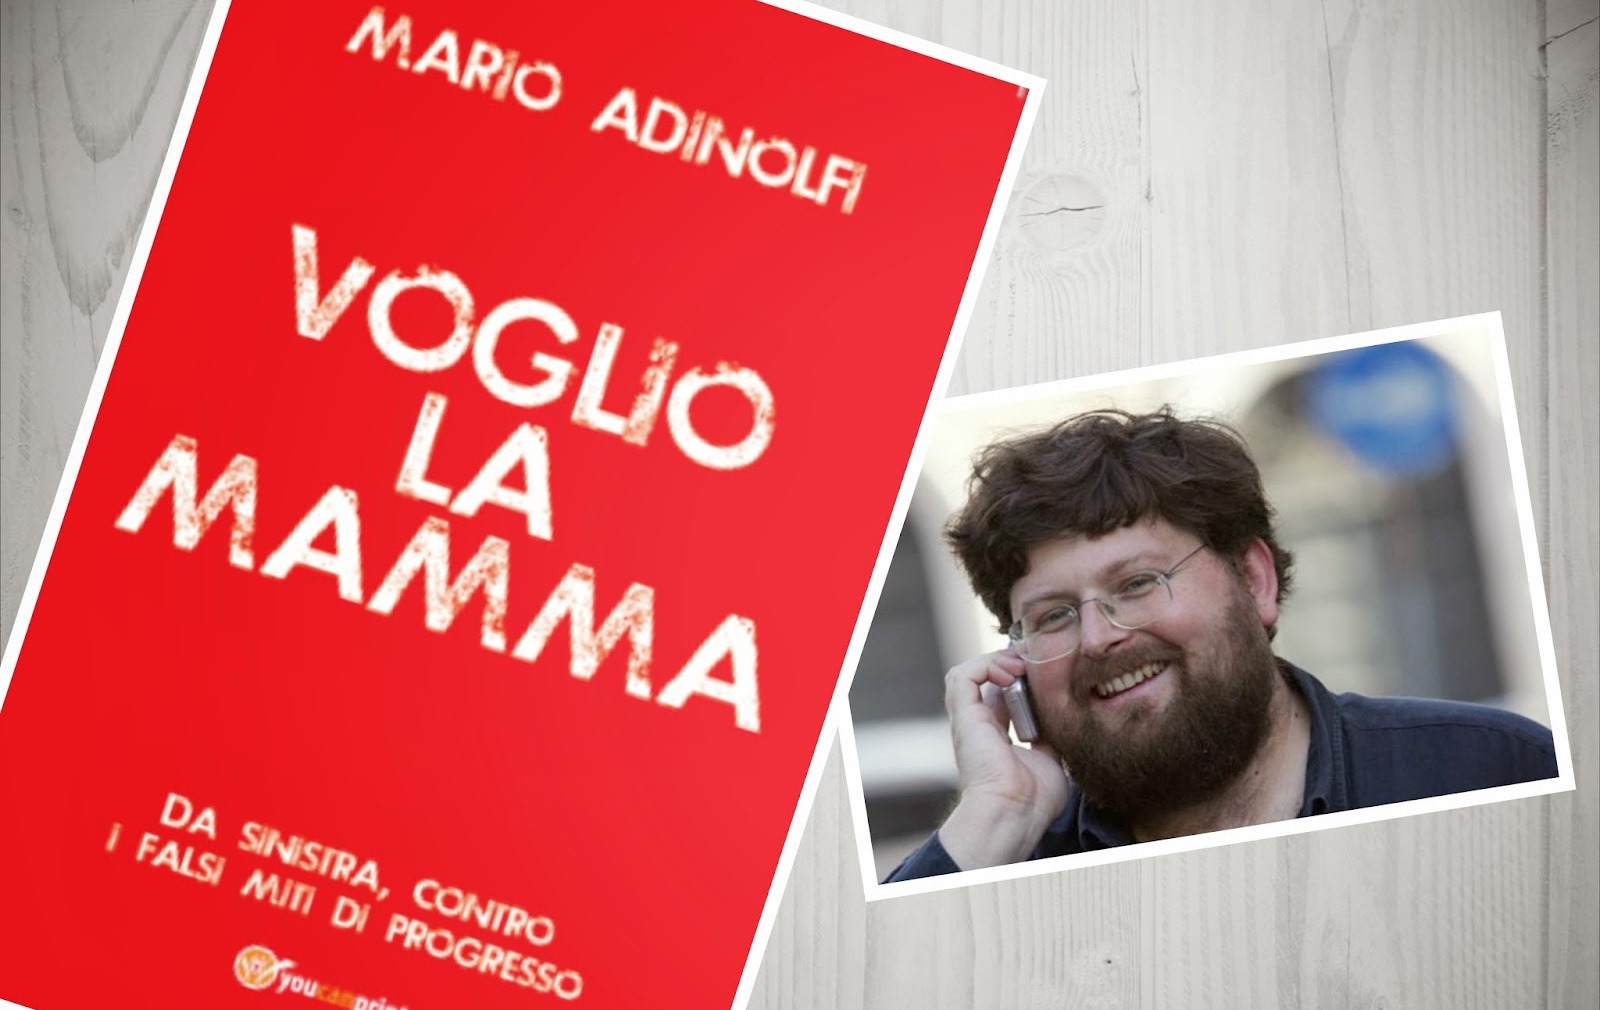 Mario Adinolfi a Trento: resistenza per la famiglia e la vita 1